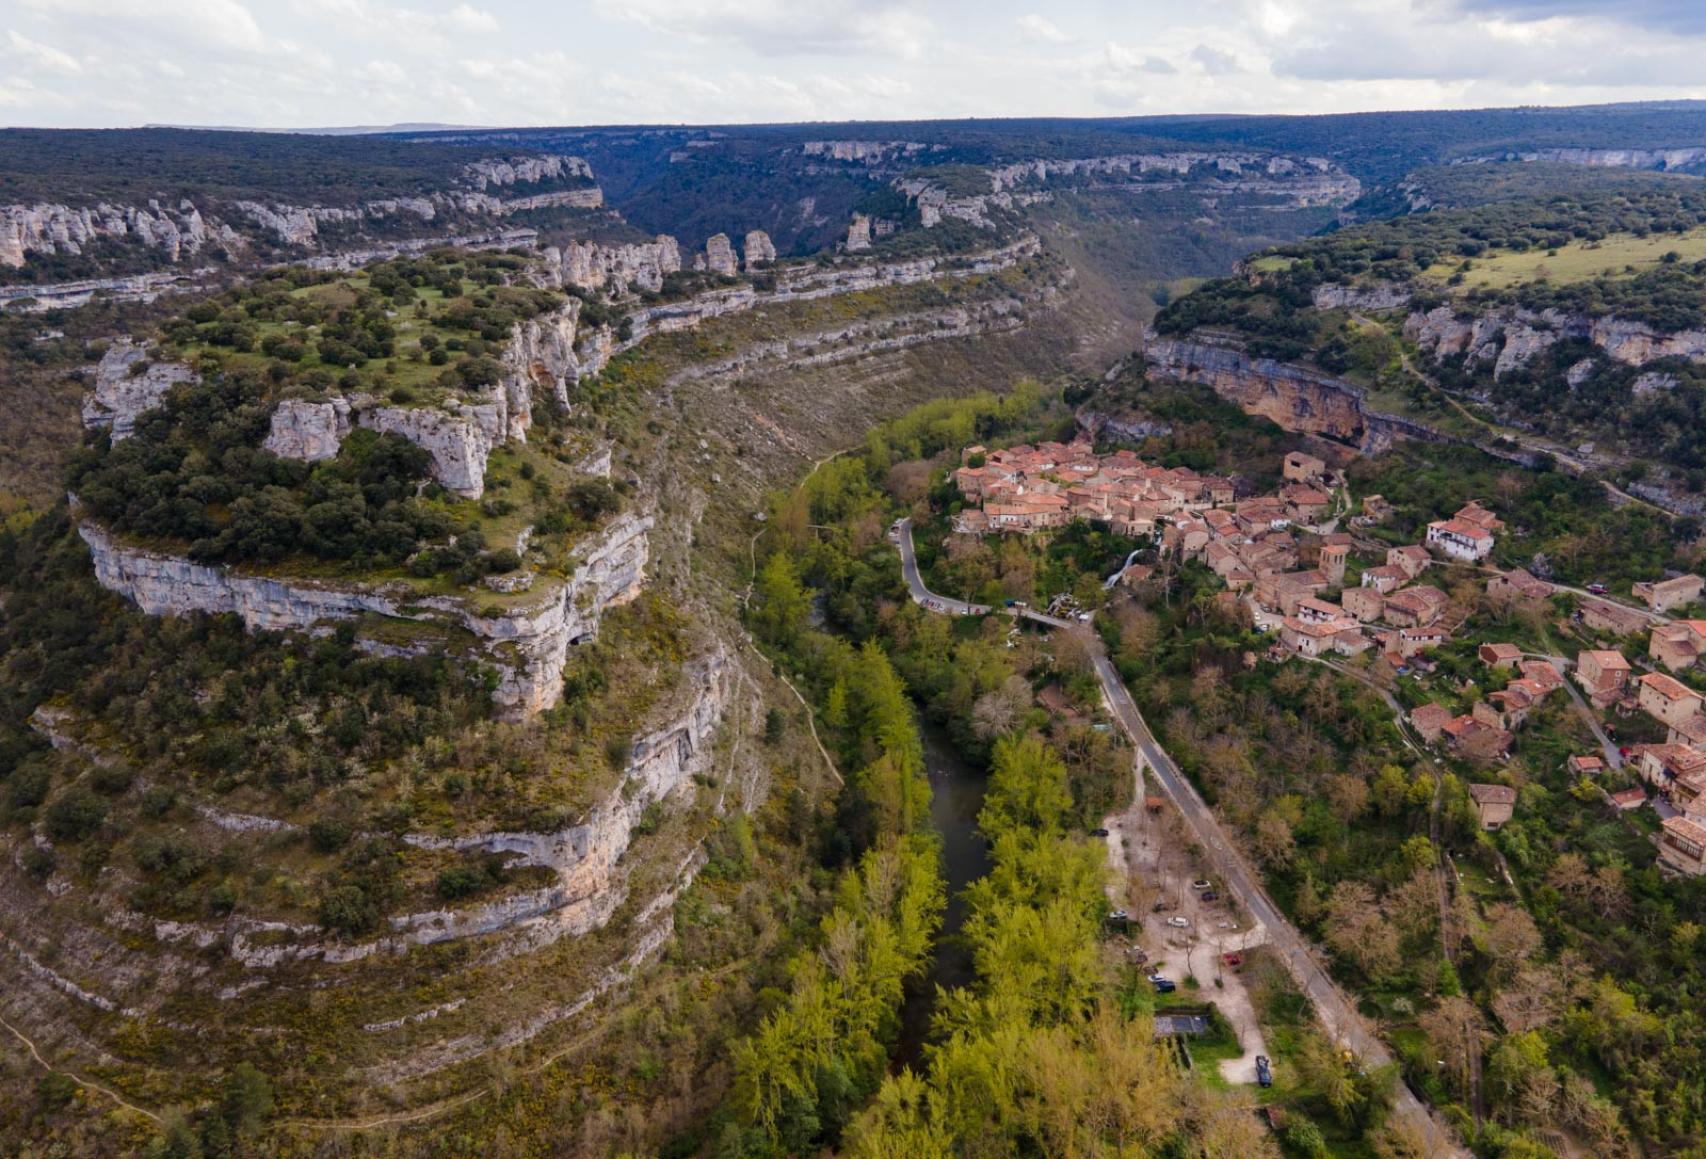 Parque natural Hoces del Ebro y el Rudrón